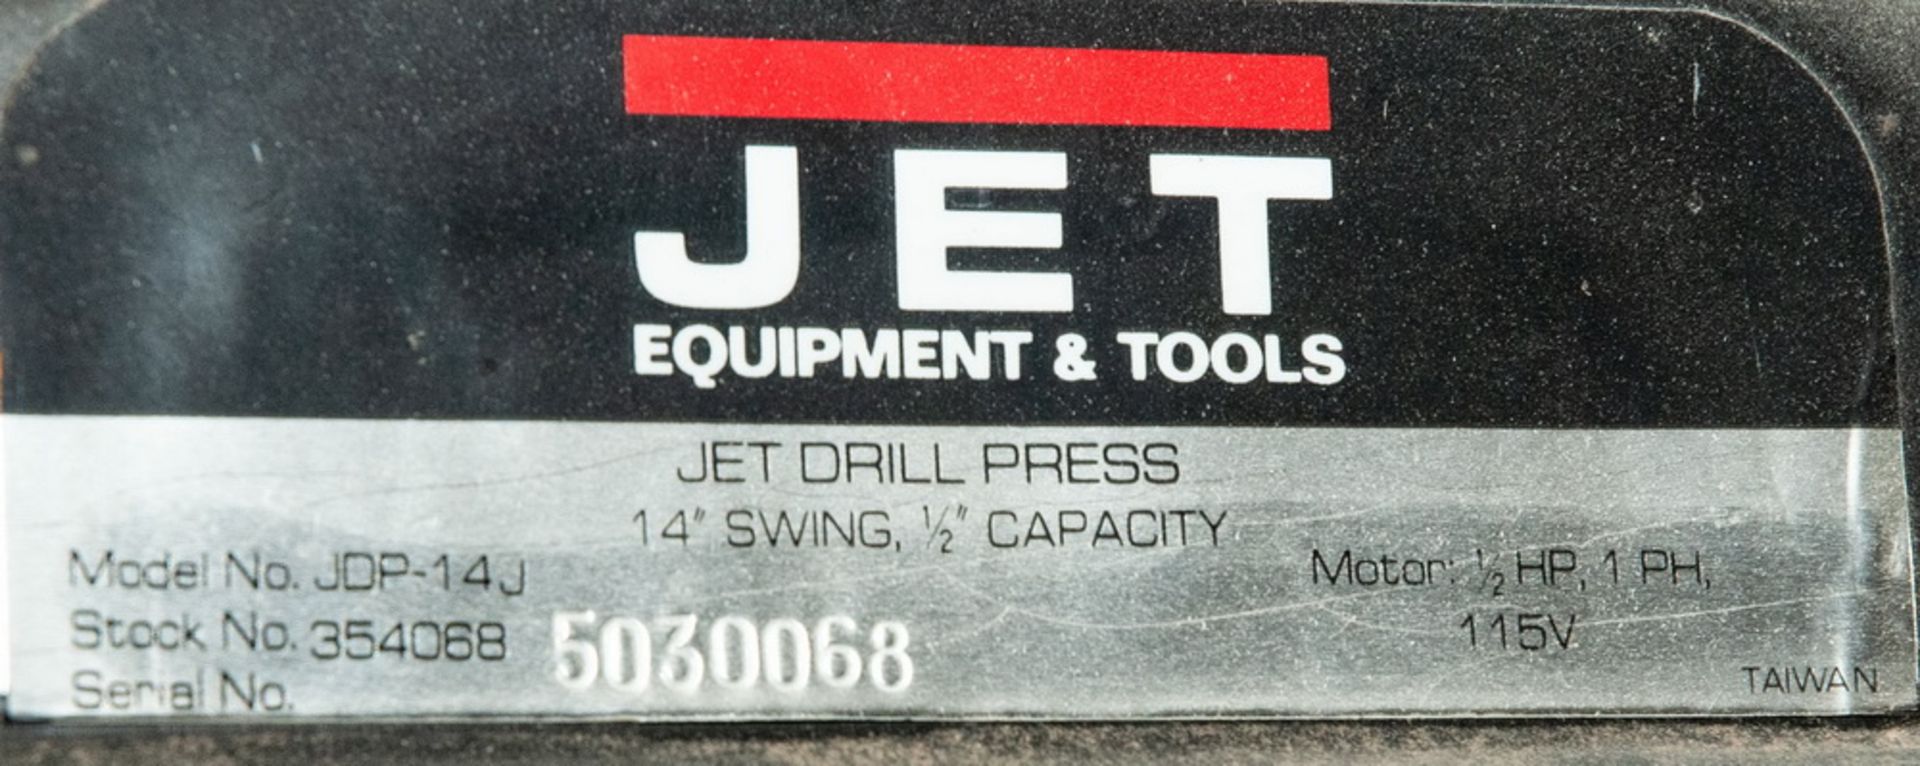 Jet Bench Top Drill Press Model. JDP-14J, s/n 5030068, 1/2hp, 115v, 14 Inch Swing - Image 2 of 2